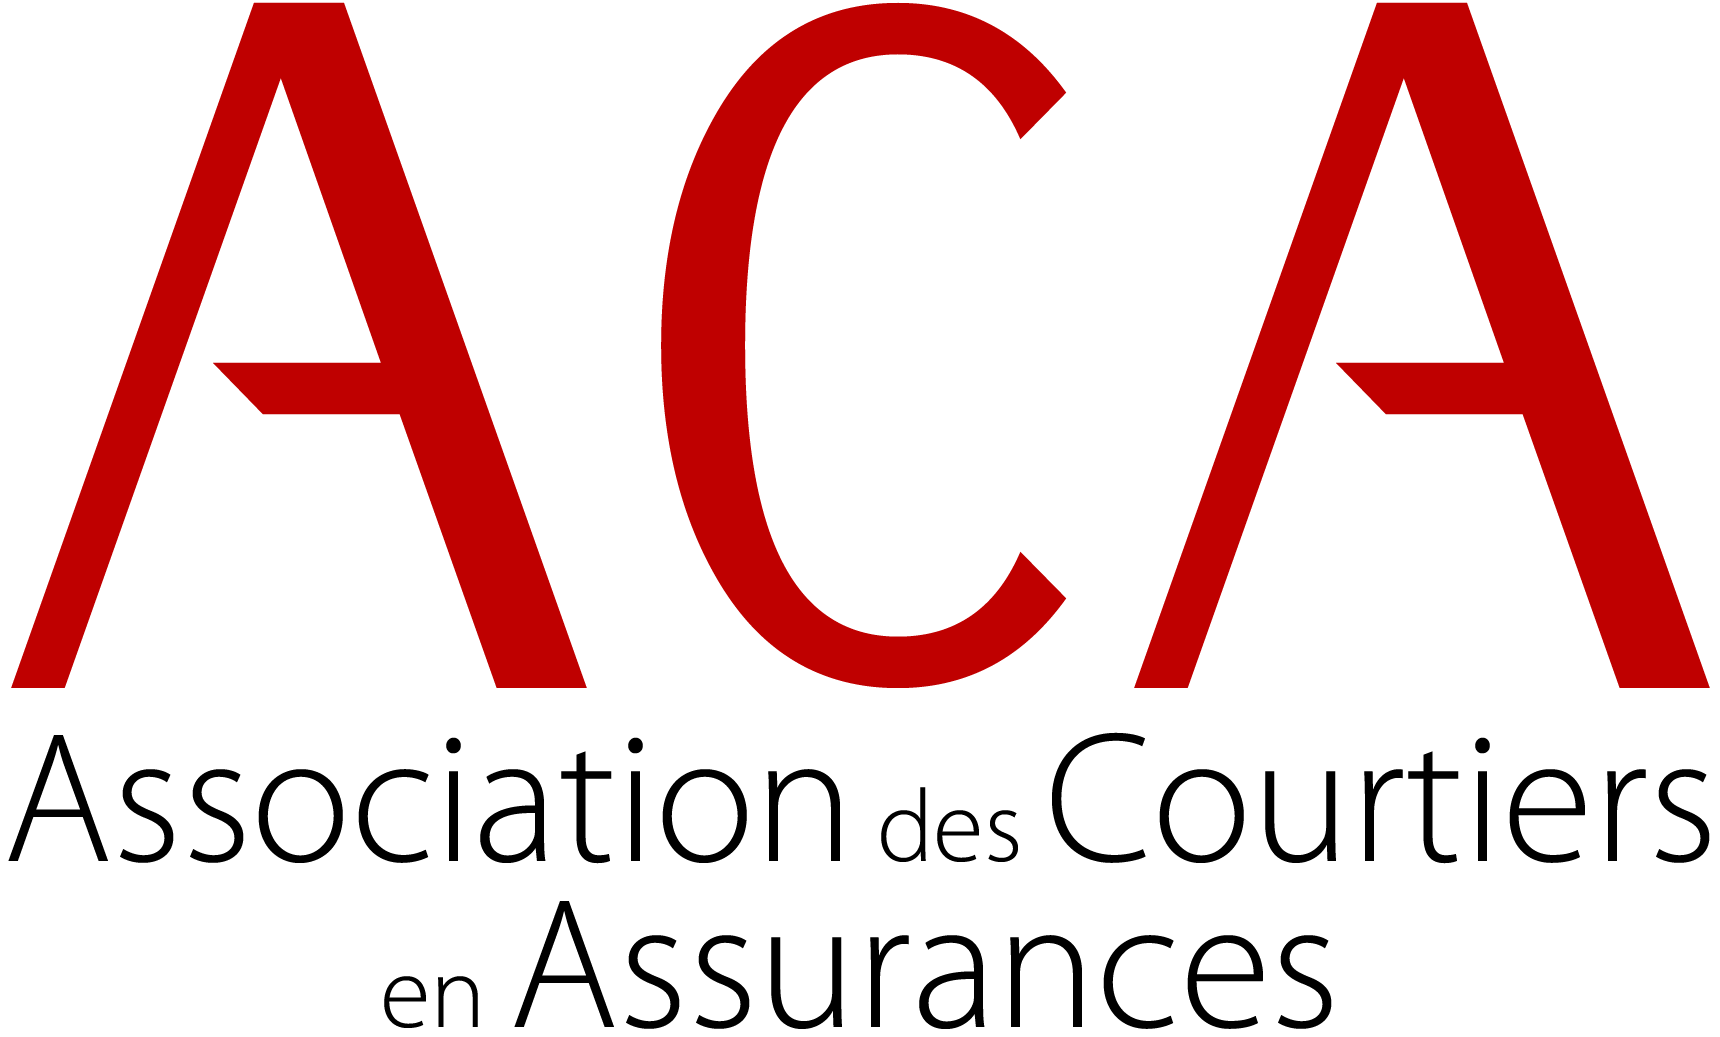 ACA Association des Courtiers en Assurances